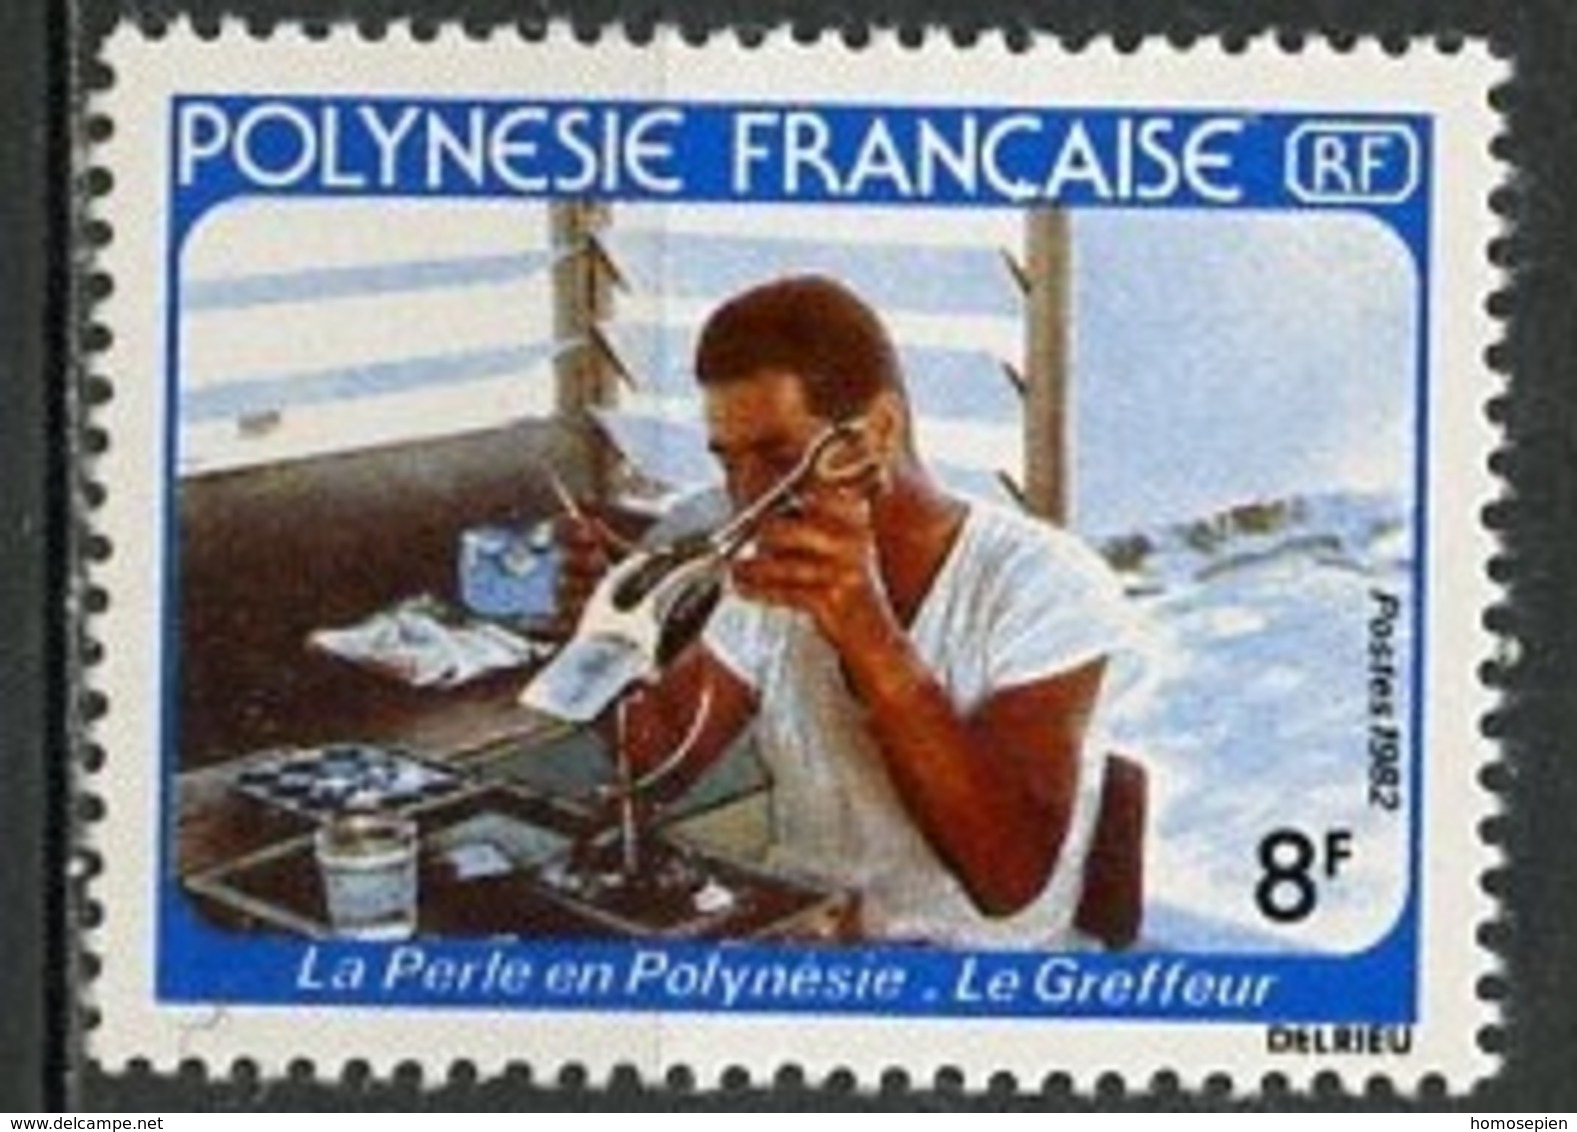 Polynésie Française - Polynesien - Polynesia 1982 Y&T N°178 - Michel N°343 *** - 8f Greffeur De Perles - Ungebraucht